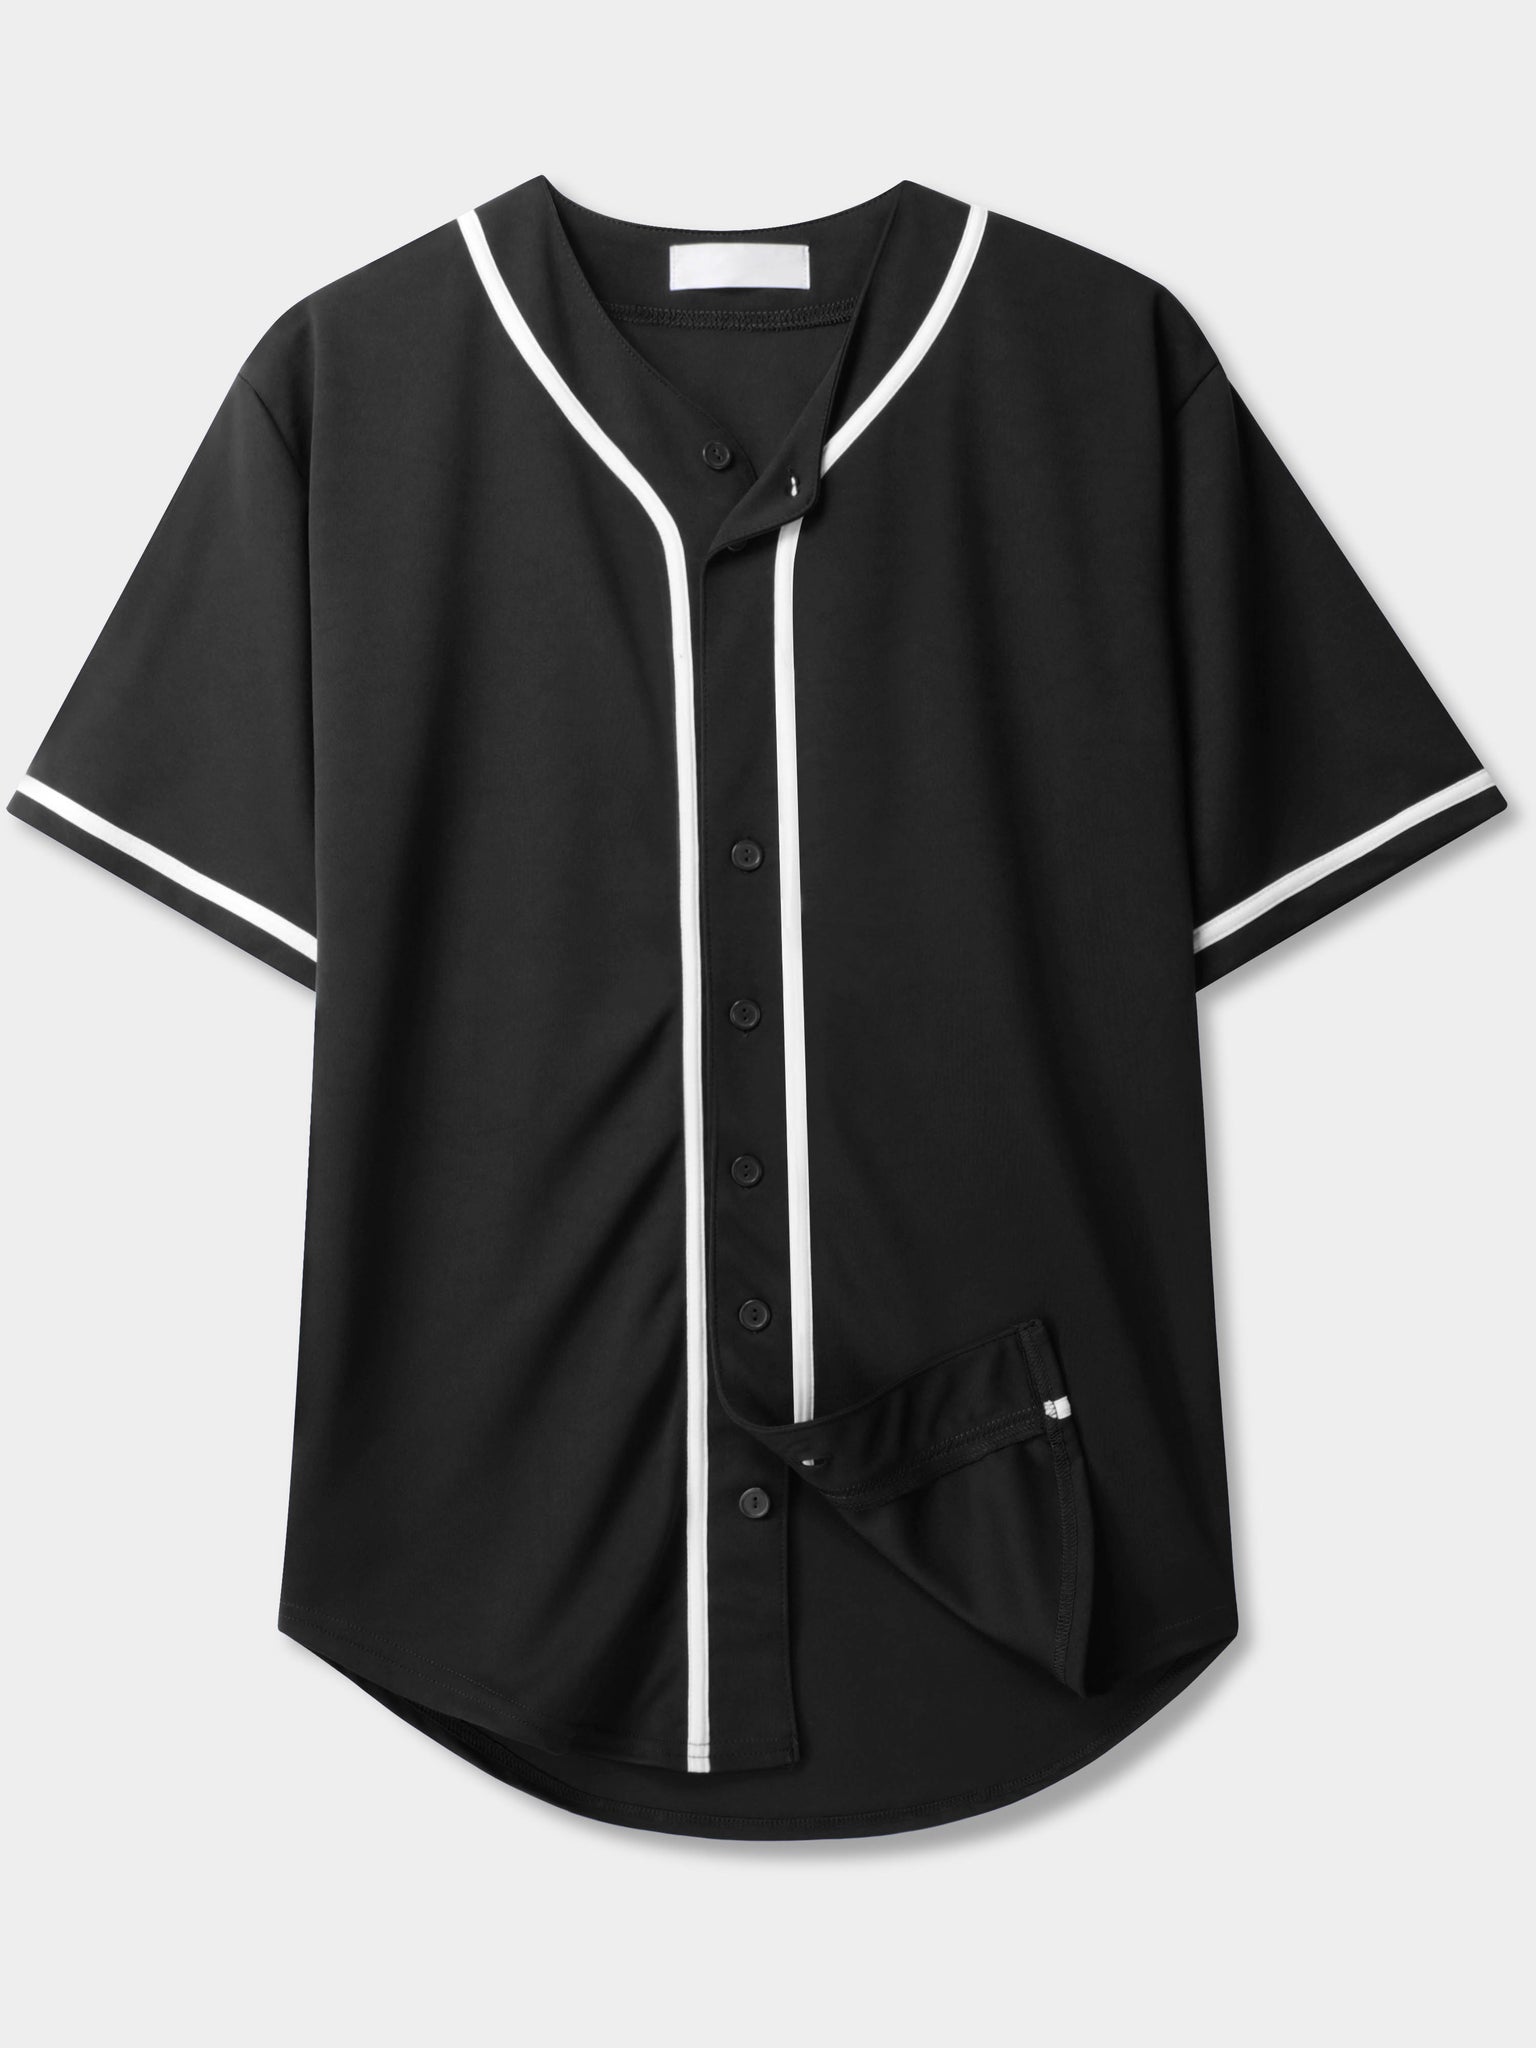  Men's Split Plain Baseball Jersey Button Down Shirts